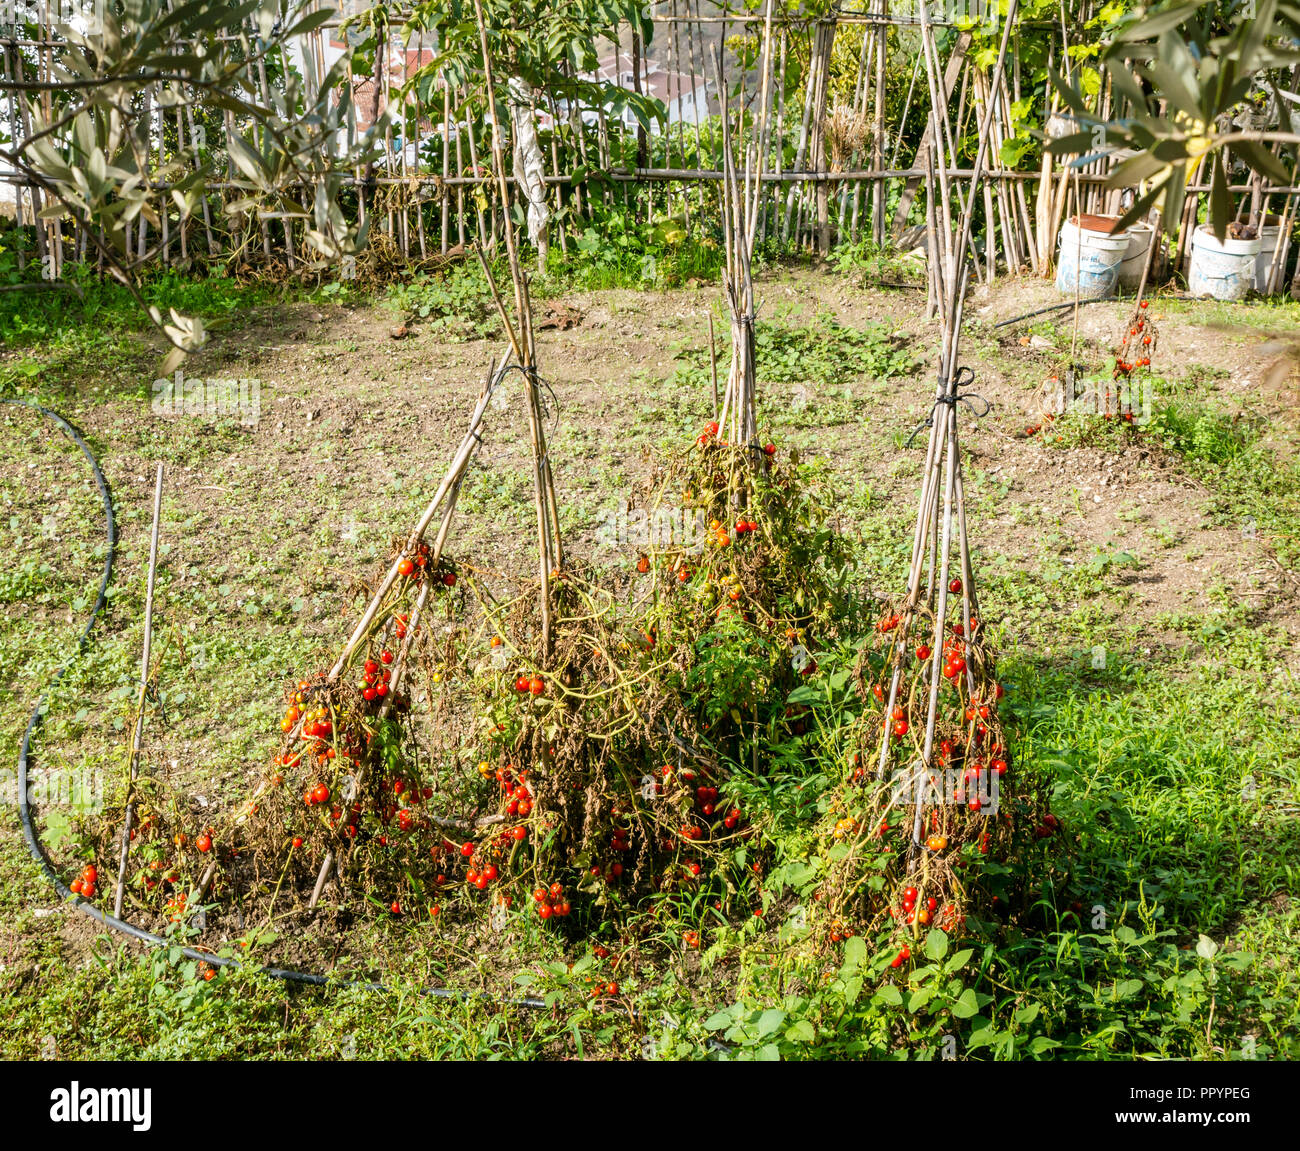 Rote Rebsorten Tomaten wachsen auf Stöcken in der Zuteilung, Canillas de Acientuna, Axarquia, Andalusien, Spanien Stockfoto